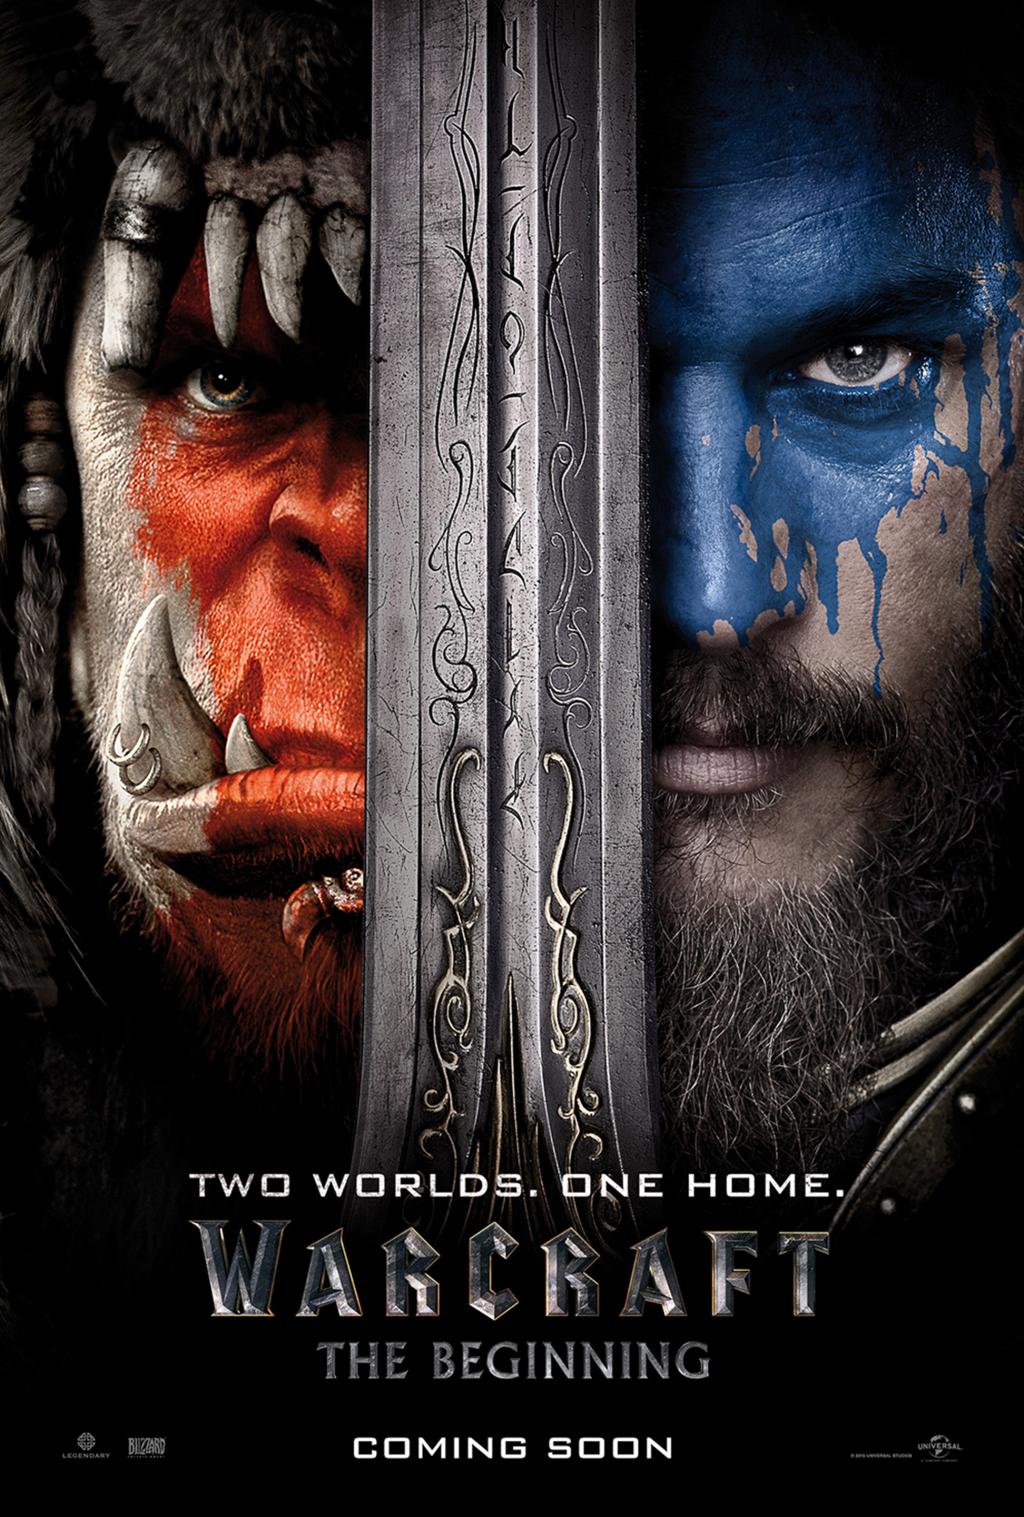 Warcraft-Poster.jpg